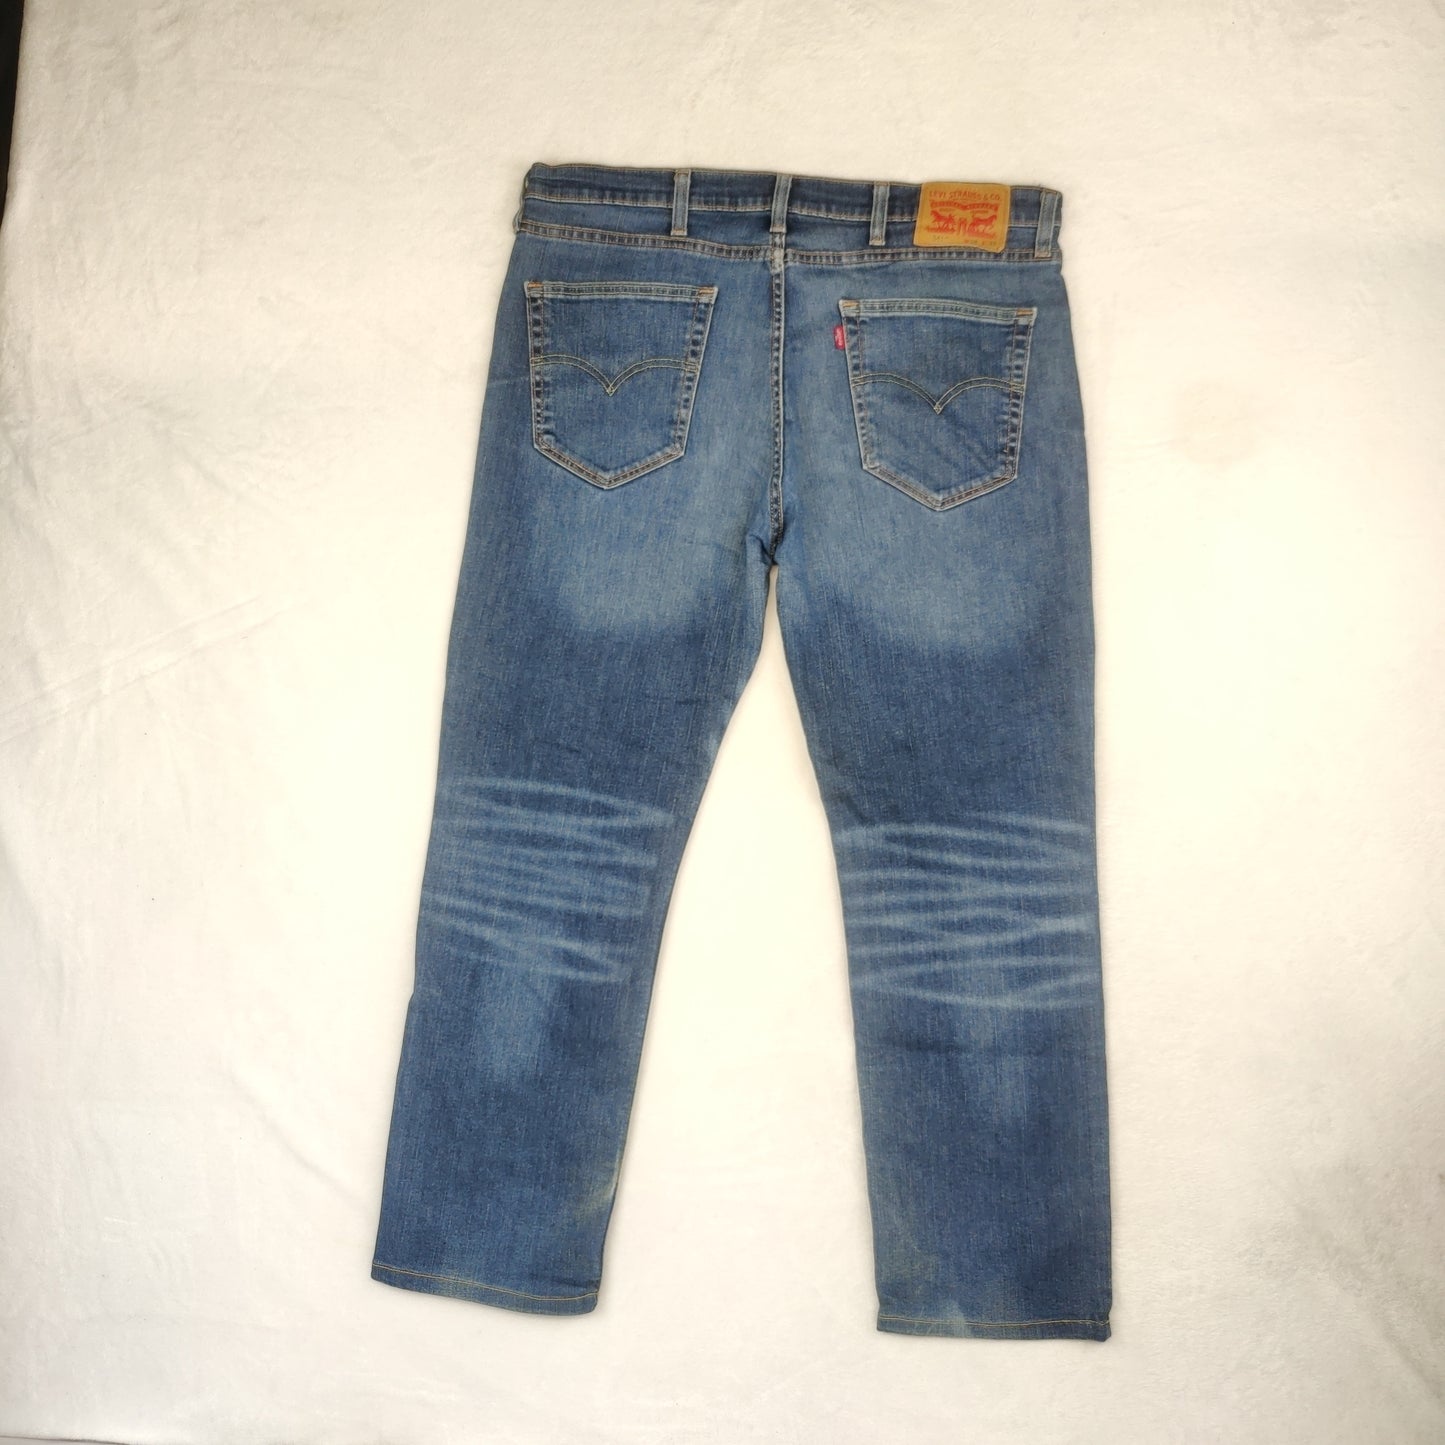 Levi's 541 Athletic Tapered Fit Blue Denim Cotton Jeans Men Size W38/L30